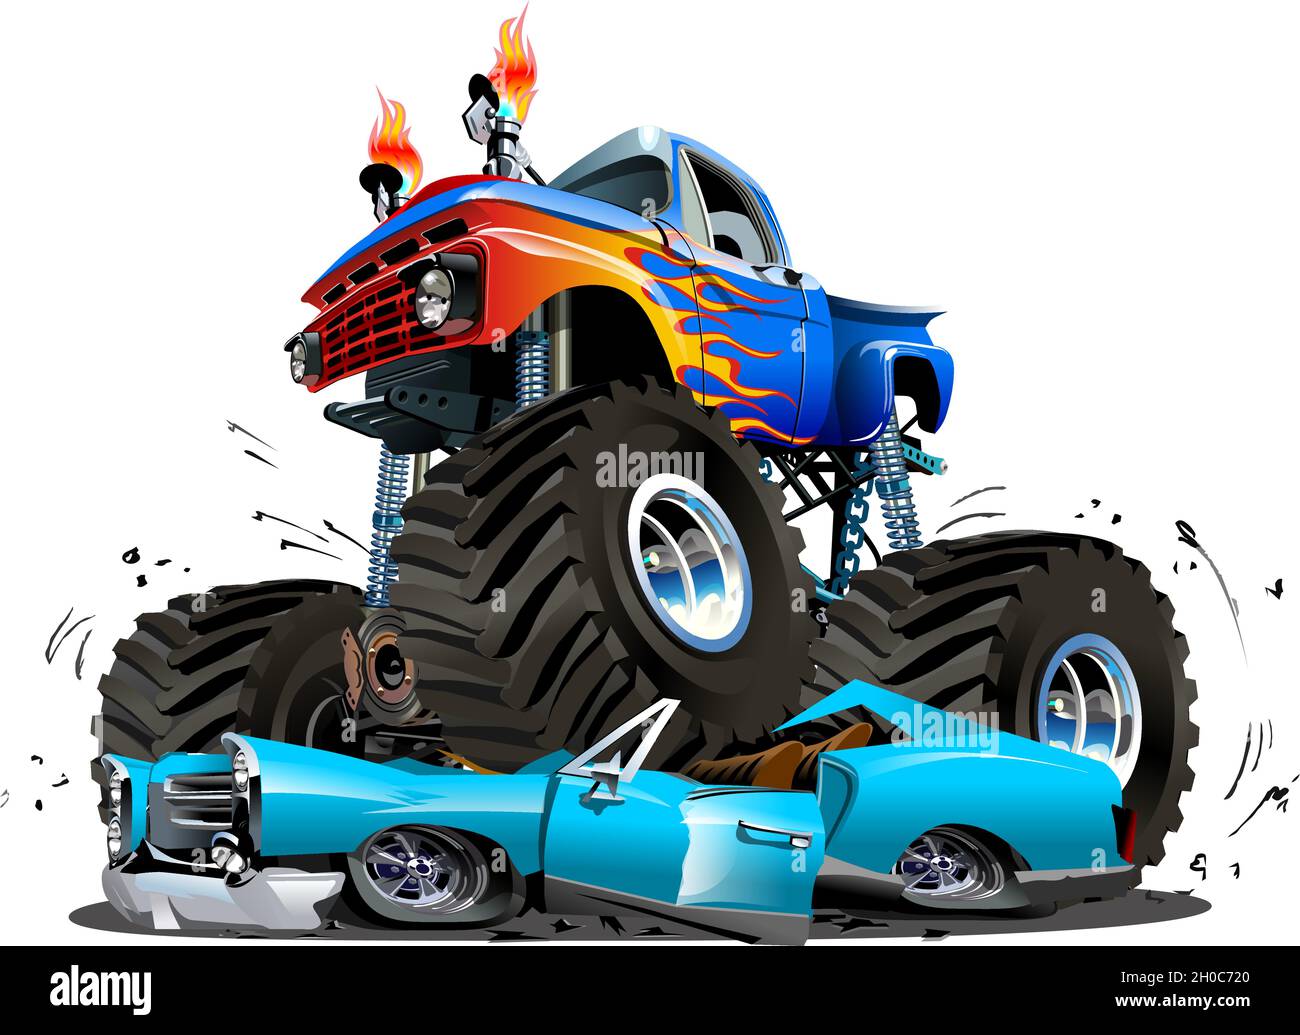 Vettore Cartoon Monster Truck. EPS-10 disponibile separato da gruppi e livelli con effetti di trasparenza per la riverniciatura con un clic Illustrazione Vettoriale